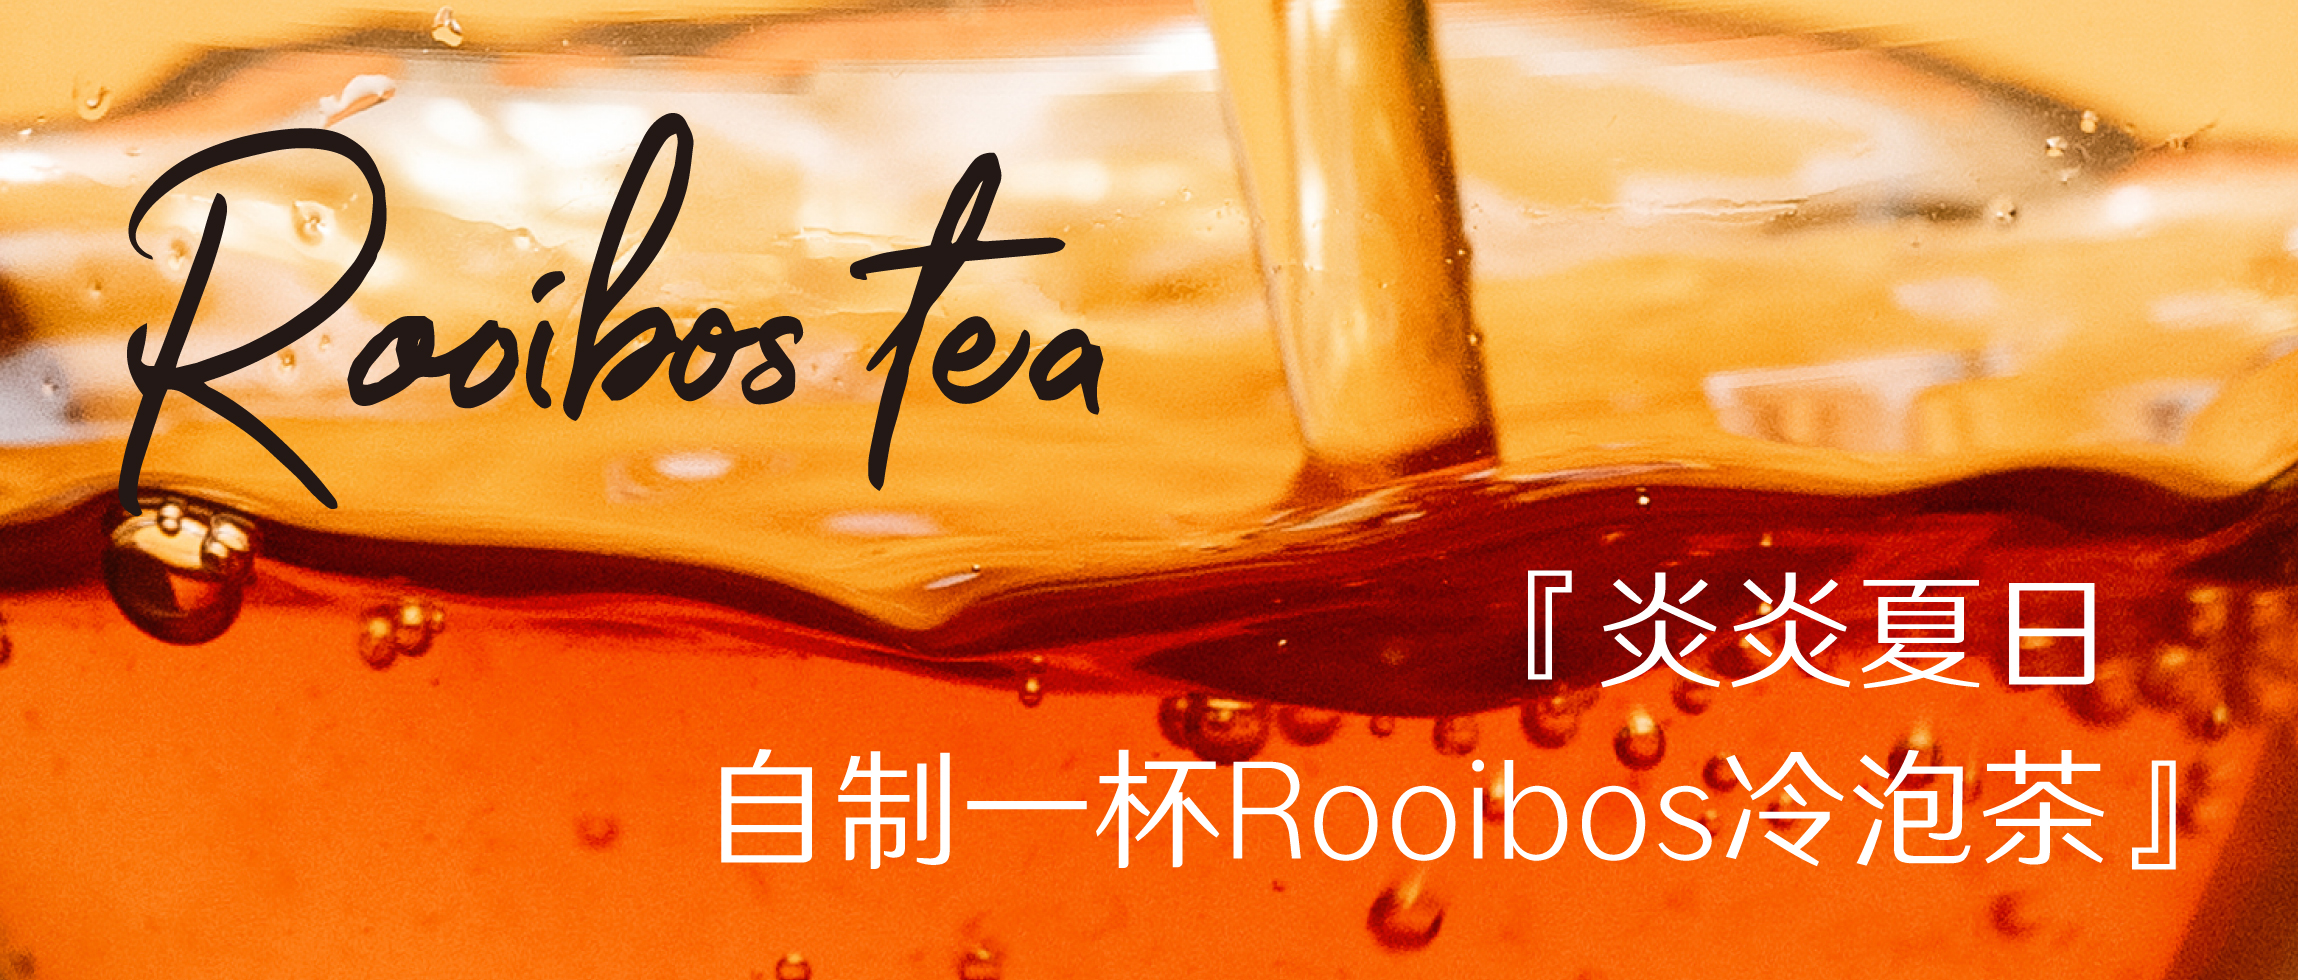 炎炎夏日|自制一杯Rooibos冷泡茶